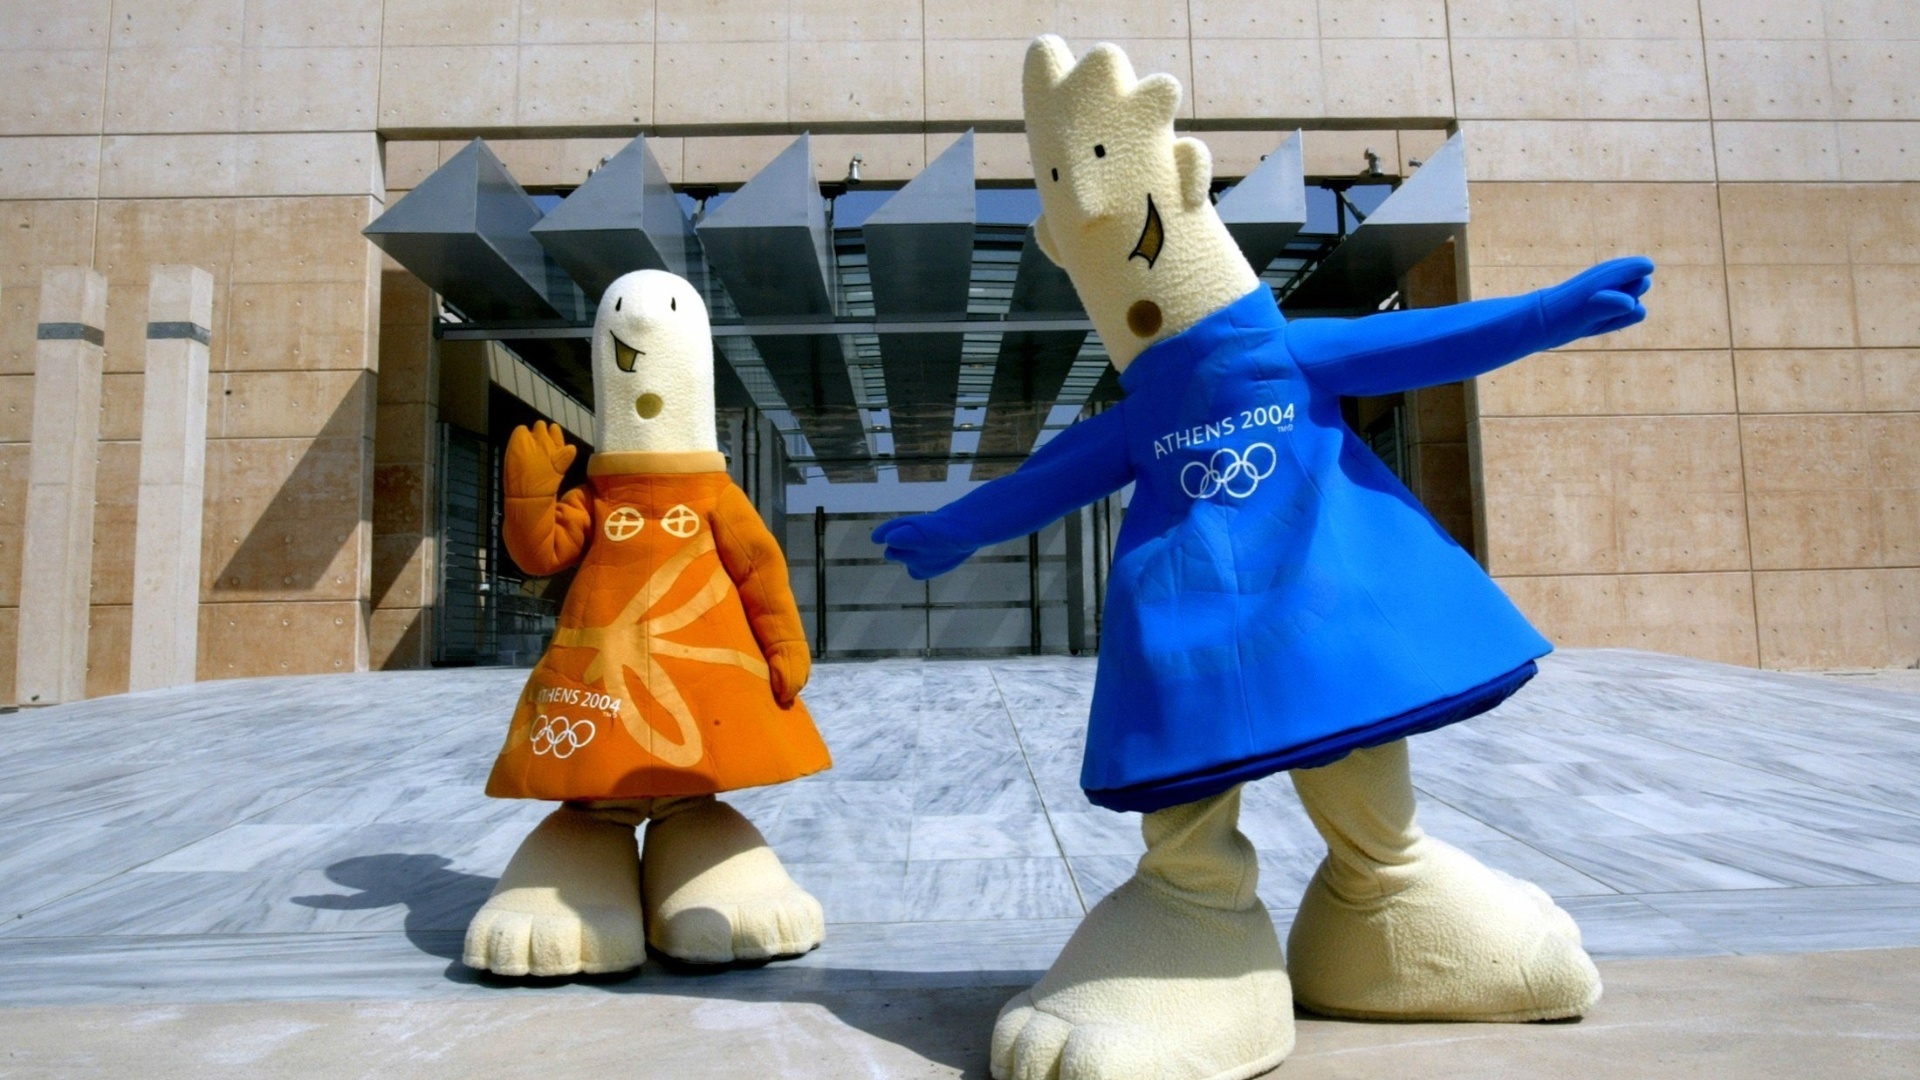 26.jul.2004 - Athena (e) e Phevos, mascotes da Olimpíada de Atenas-2004, posam em frente ao local de início da maratona